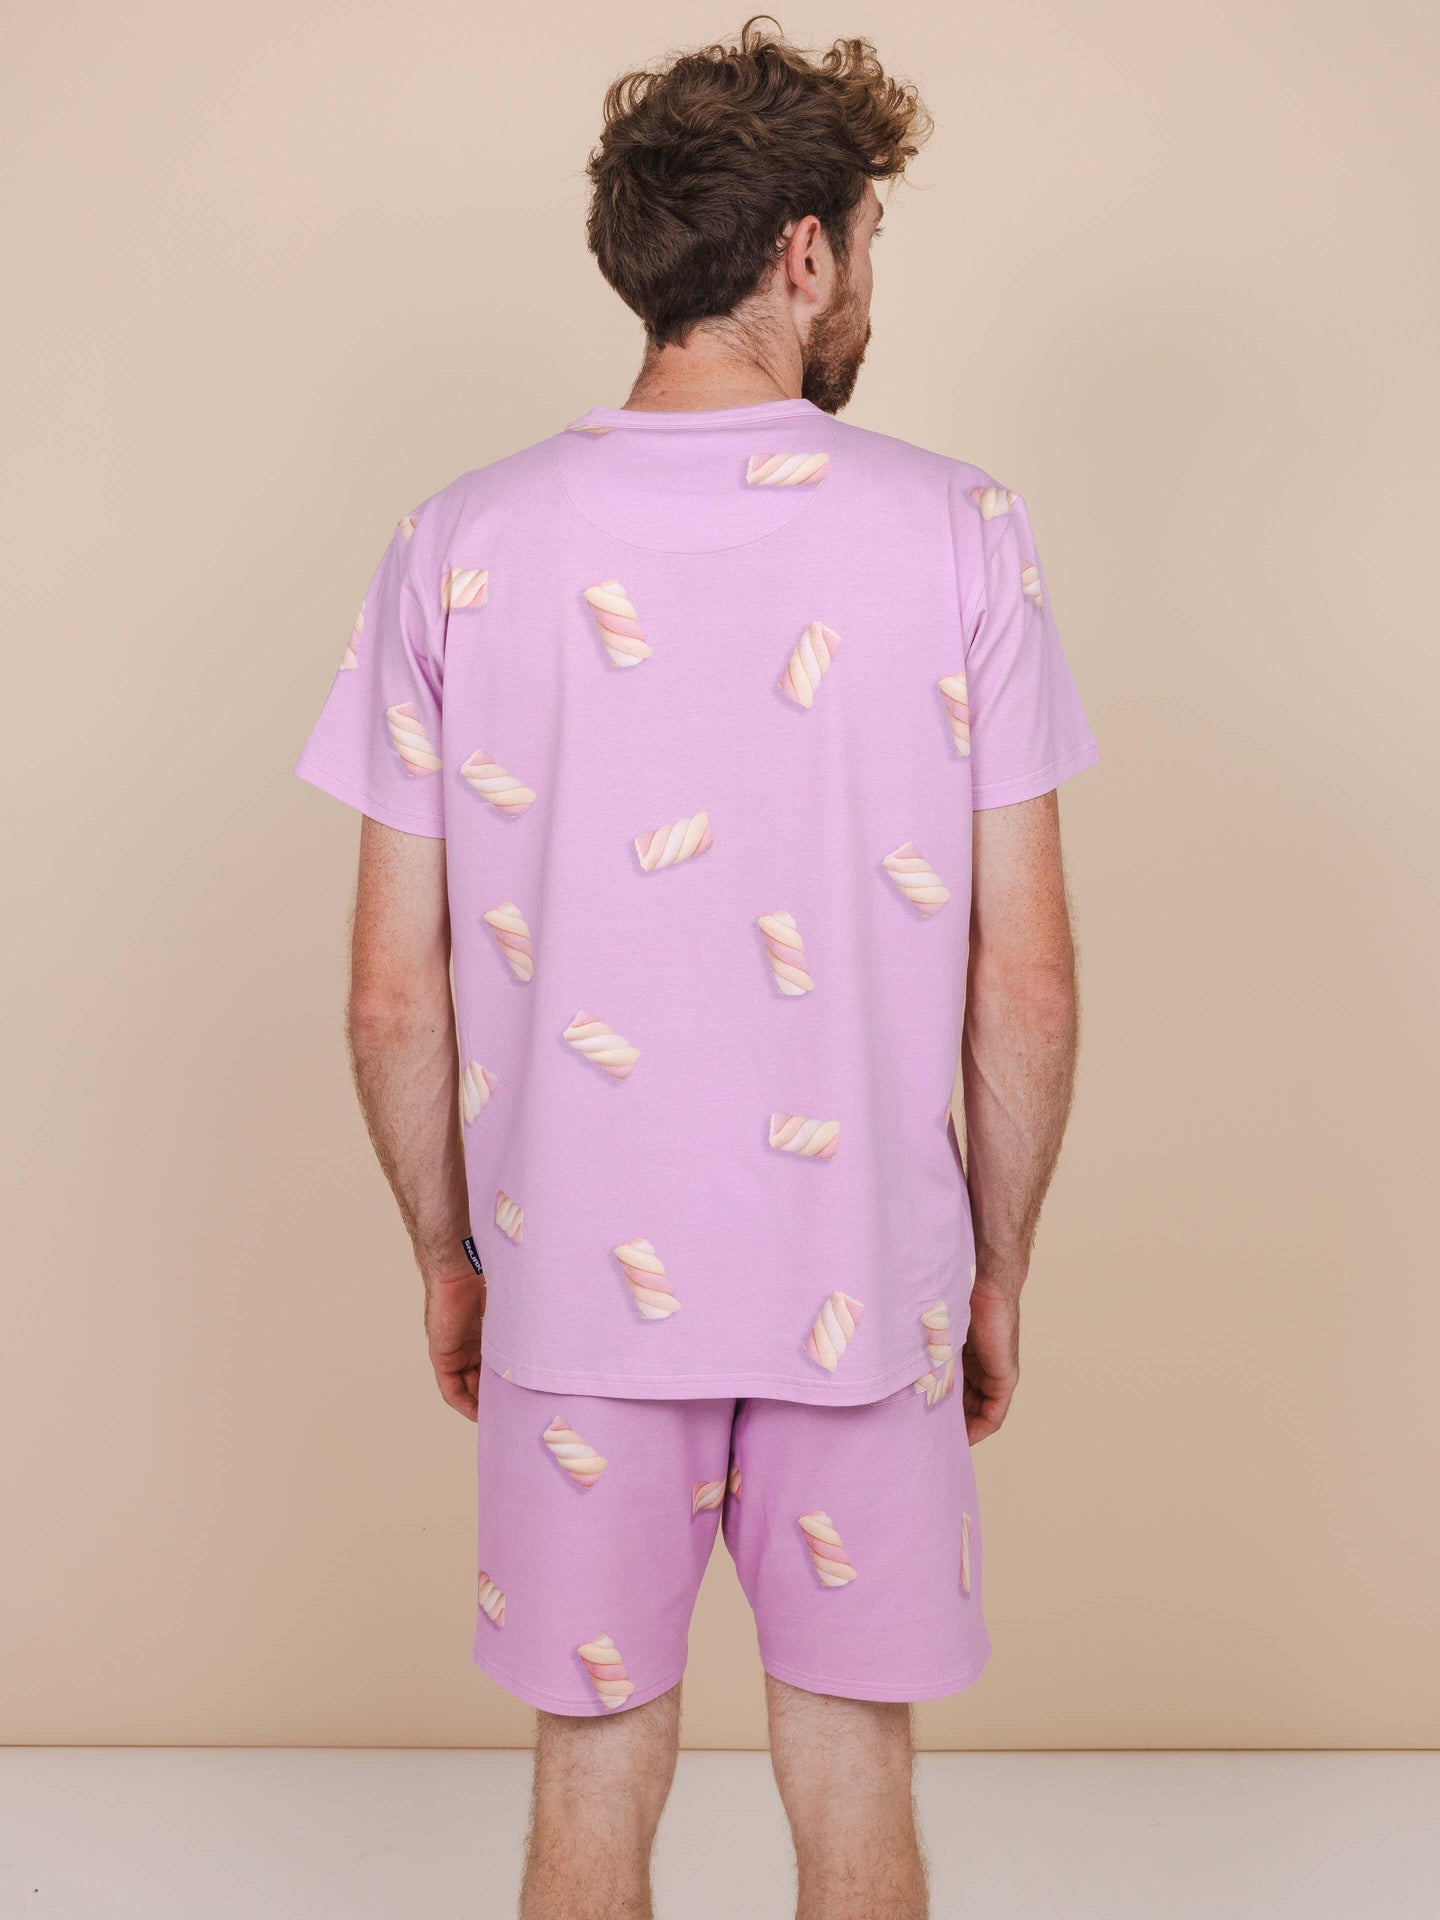 Twisters T-shirt en Korte Broek set Heren - SNURK